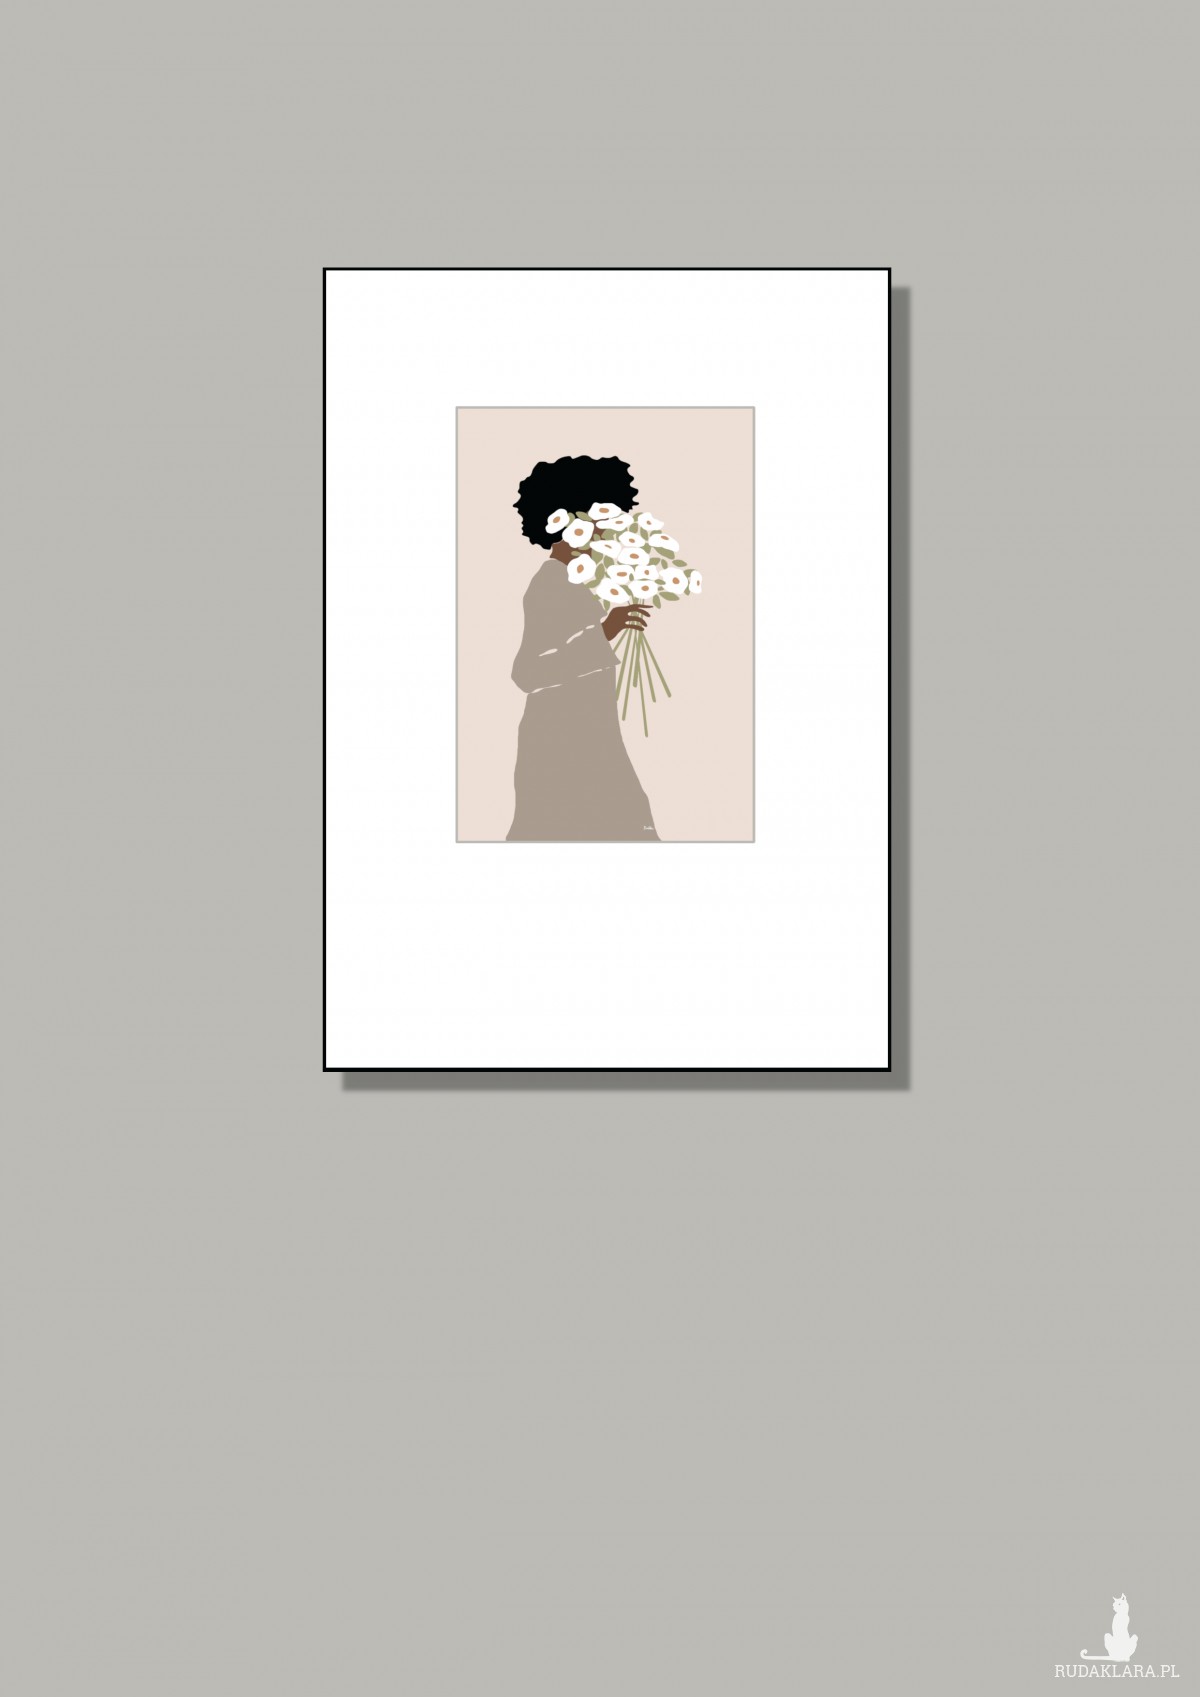 Grafika "Kobieta z bukietem" plik cyfrowy do pobrania, wydrukuj jak chcesz